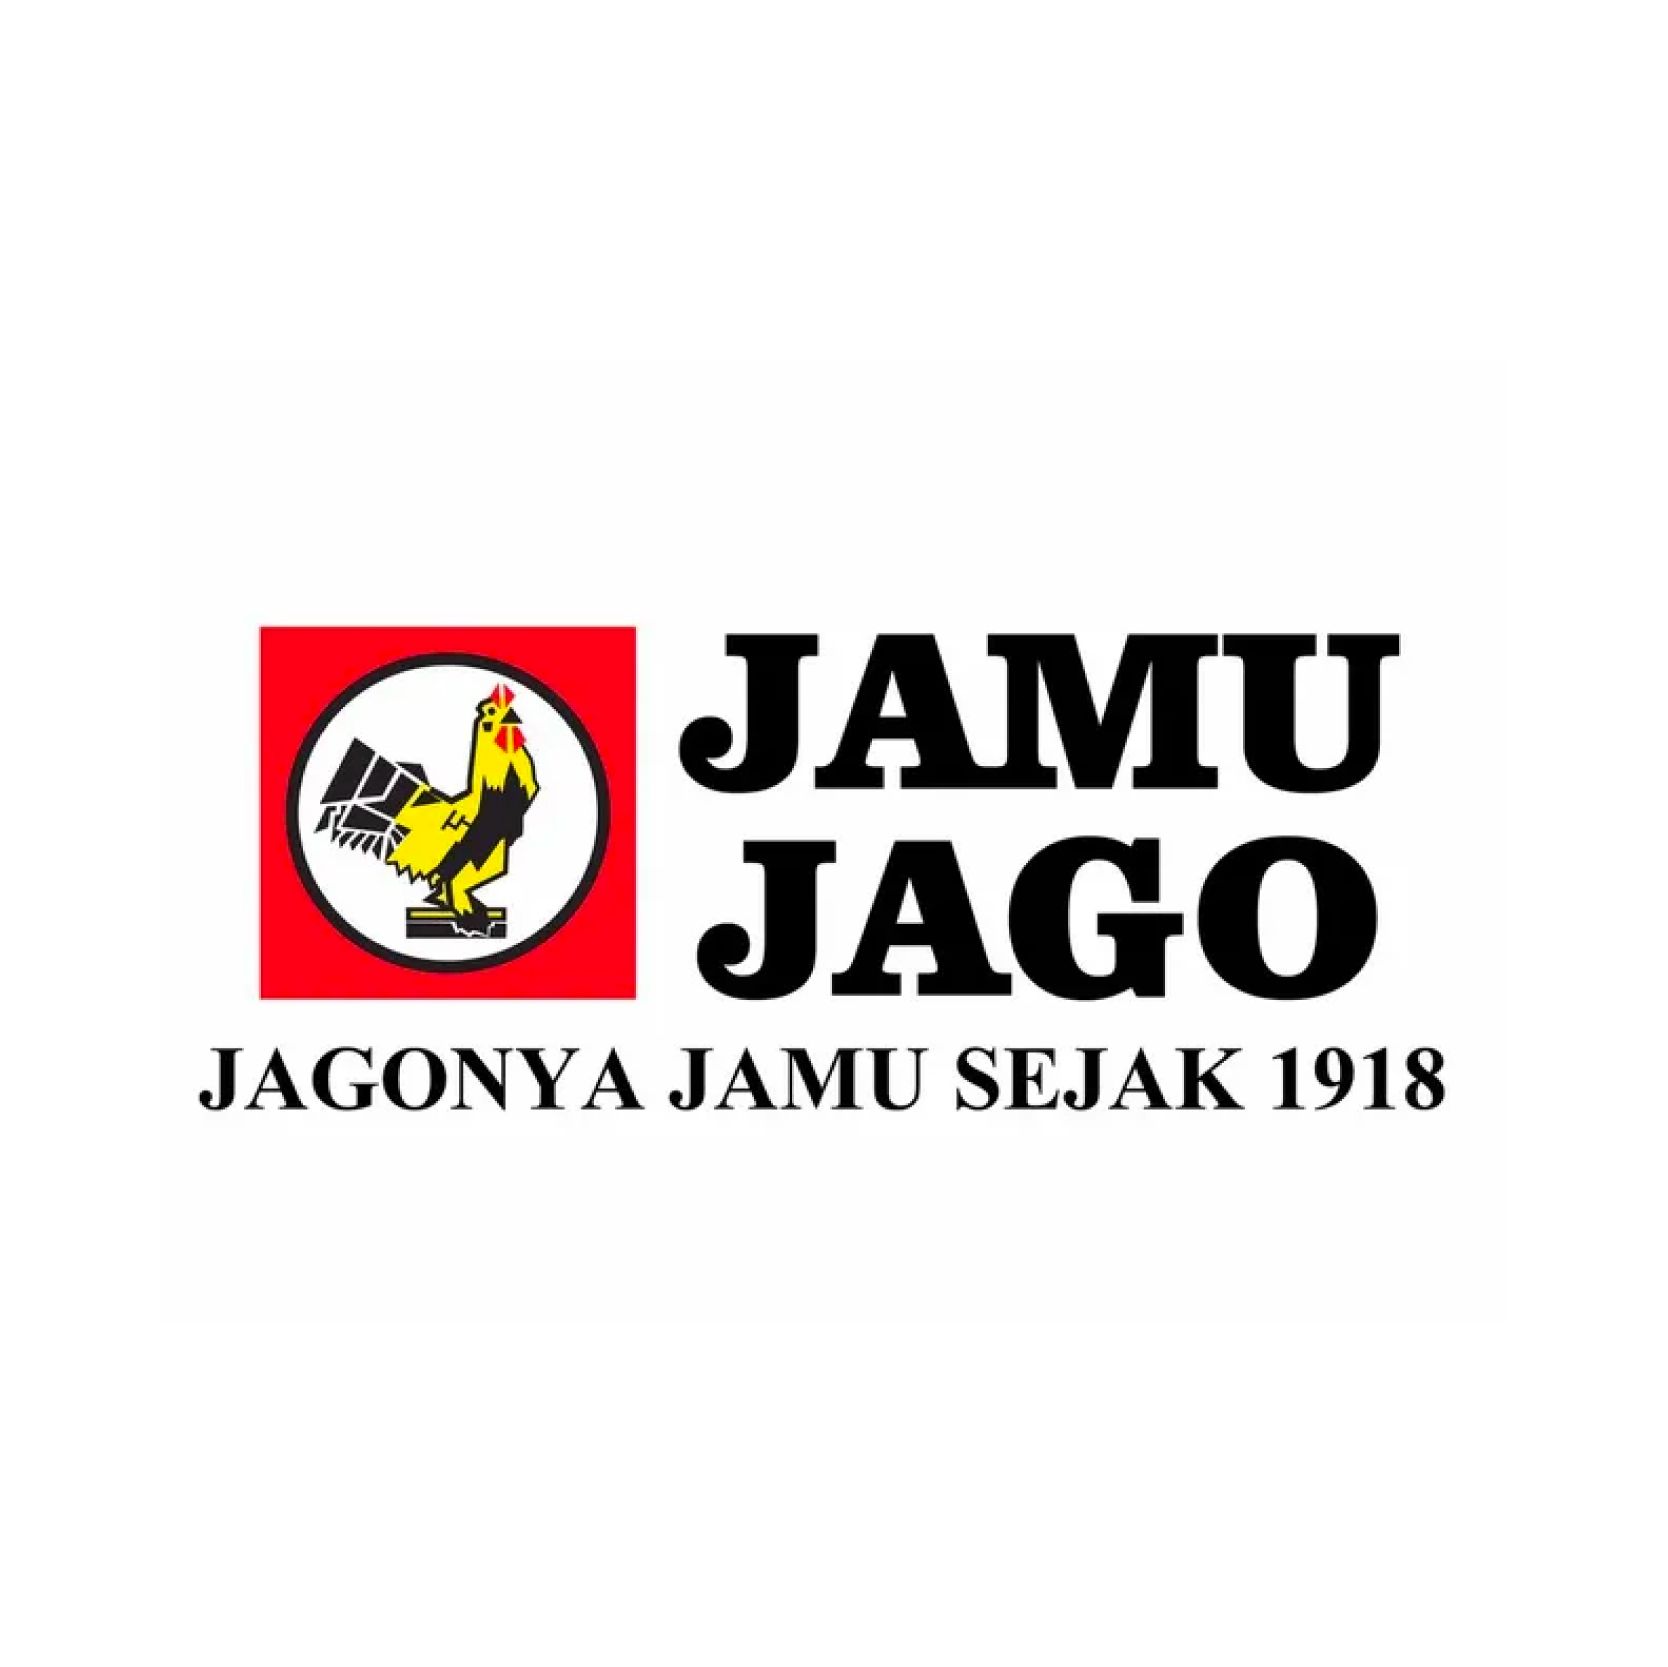 Jamu Jago